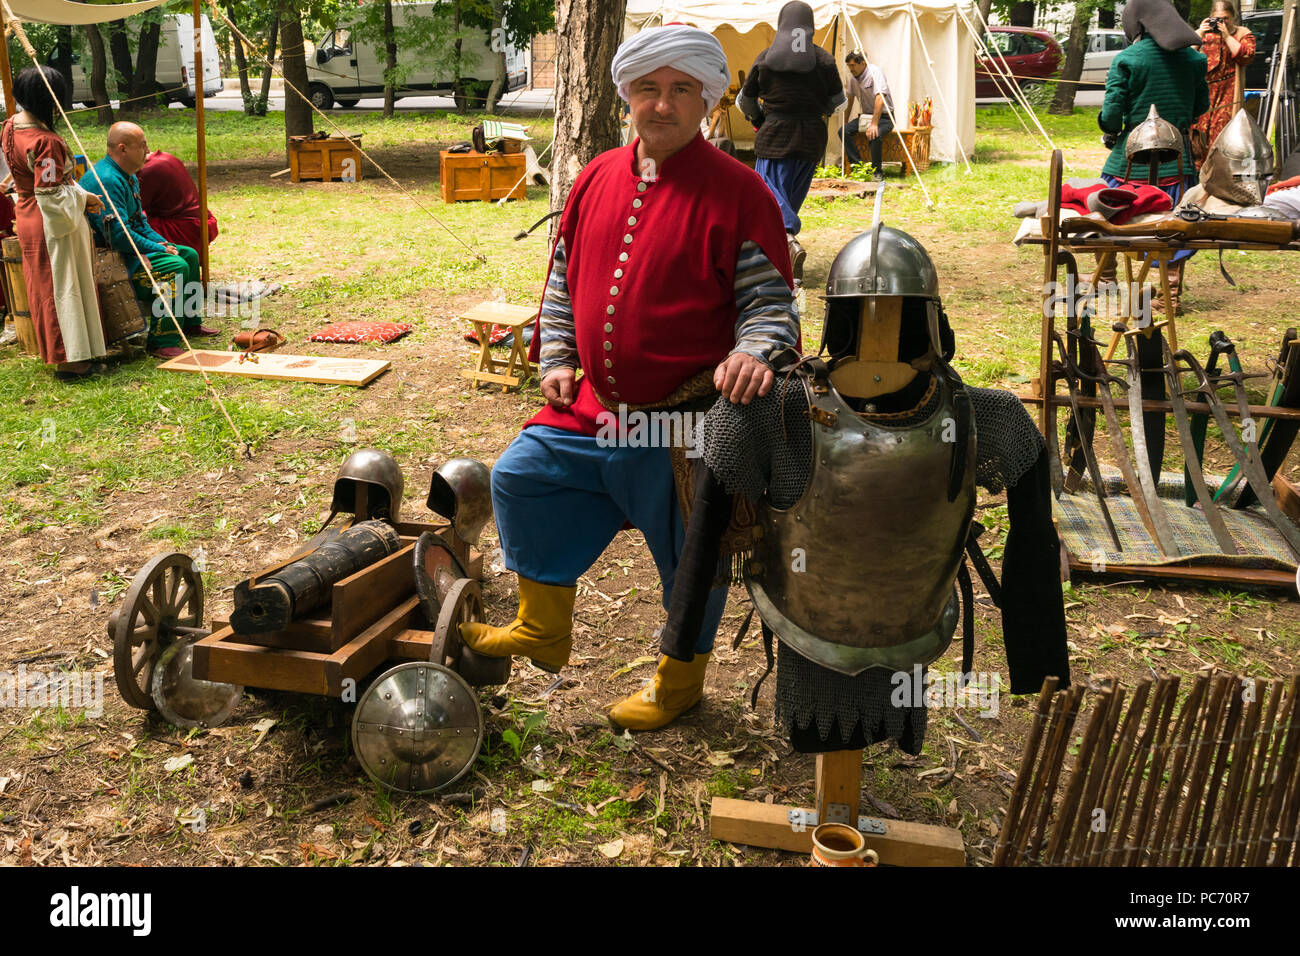 Ploiesti, Roumanie - 14 juillet 2018 : l'acteur habillé guerrier turc ottoman pose entouré d'armes médiévales, cannon, épées et armures du corps et de la tête Banque D'Images